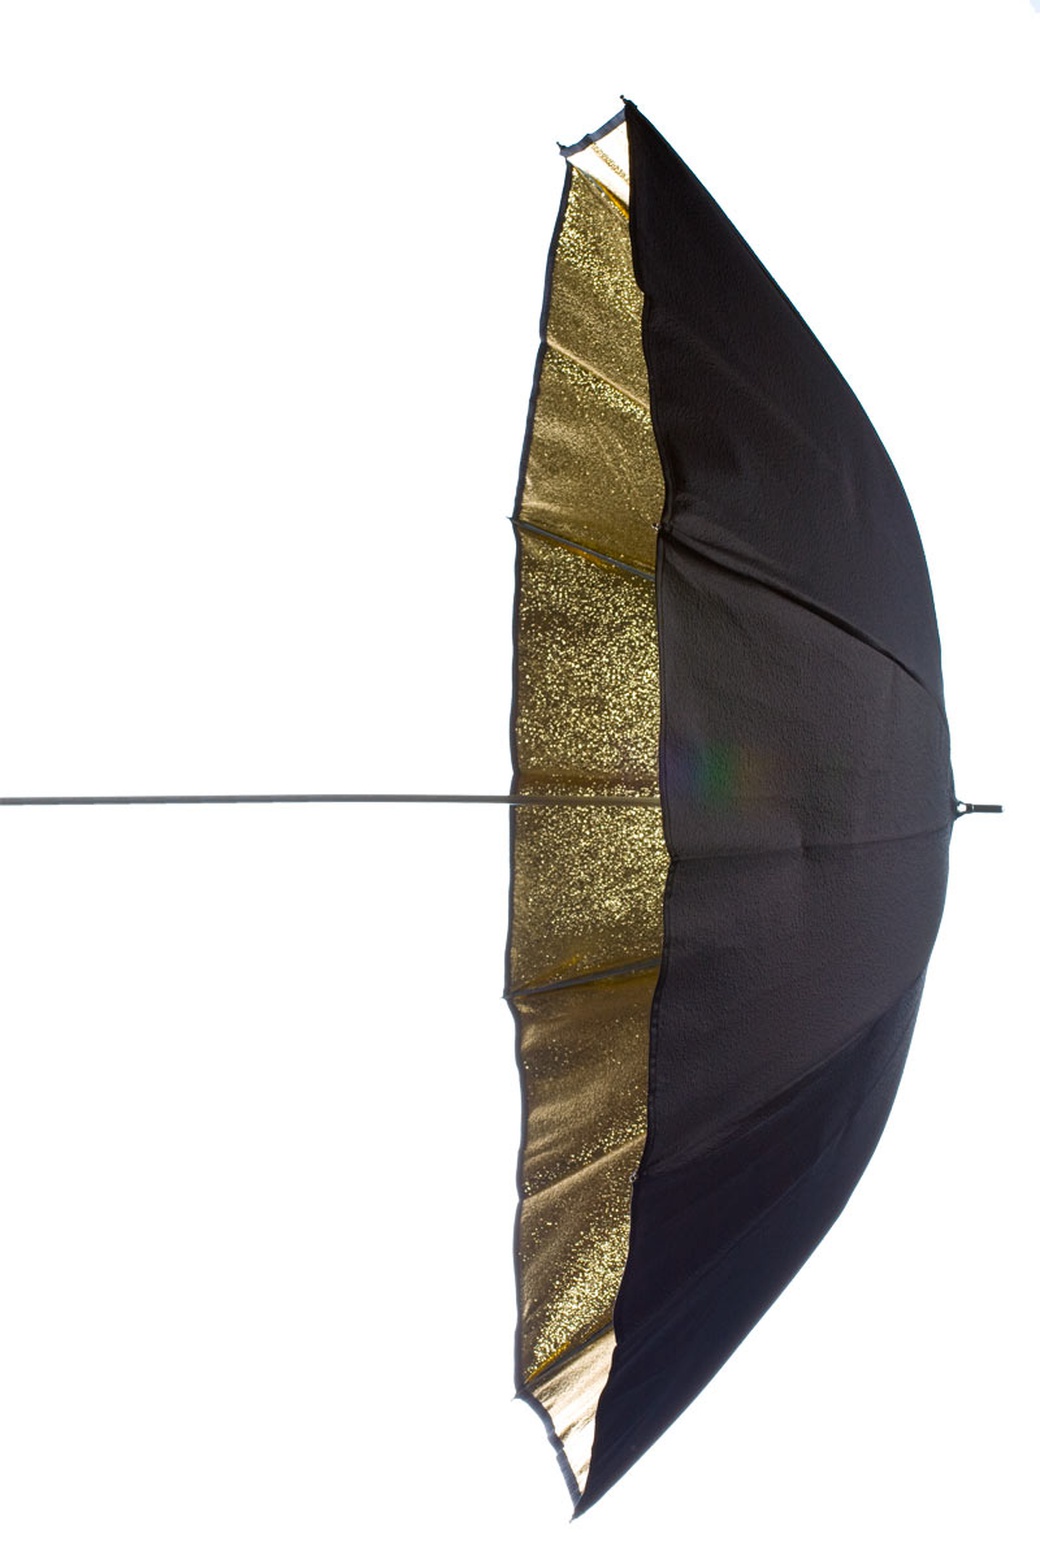 Зонт Elinchrom отражающий золото 105 см фото